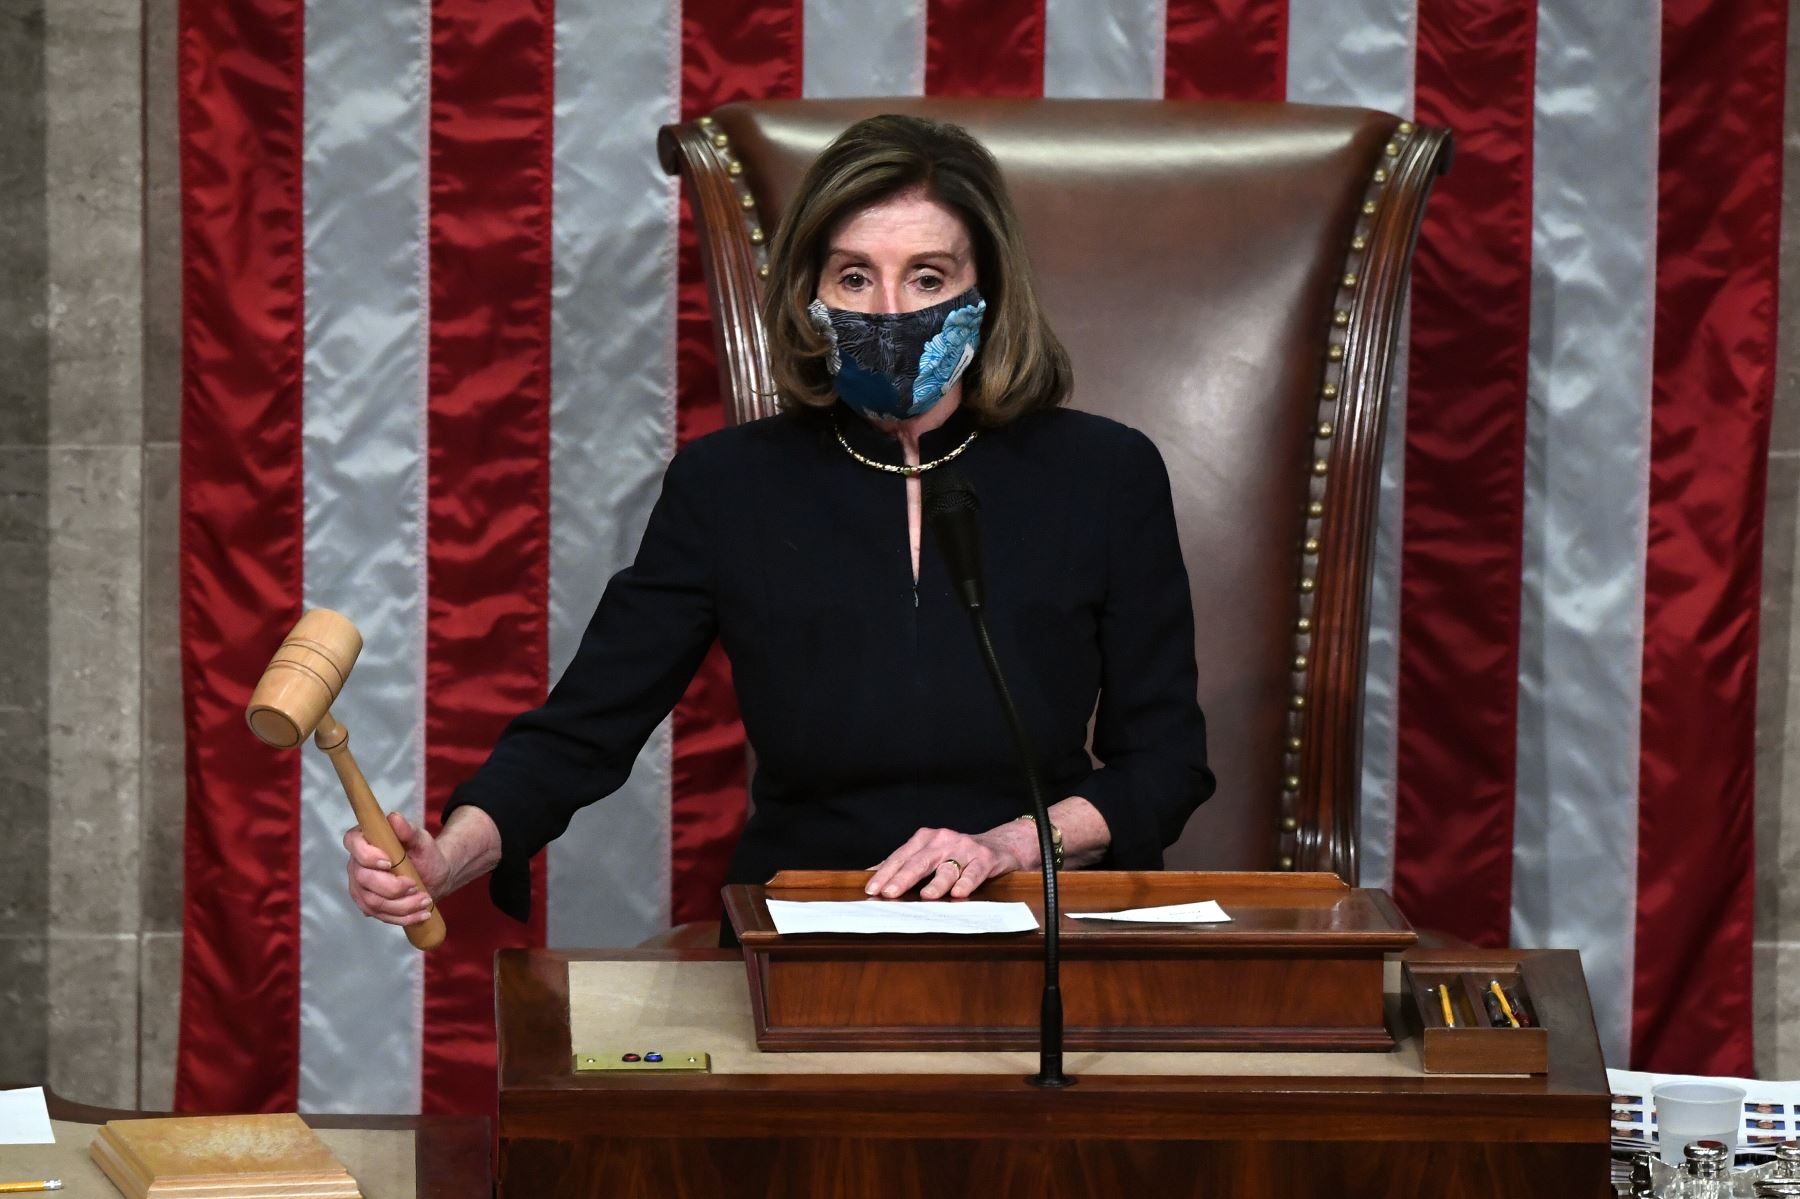 La presidenta de la Cámara de Representantes, Nancy Pelosi, preside la votación sobre el juicio político al presidente de los Estados Unidos, Donald Trump. Foto: AFP